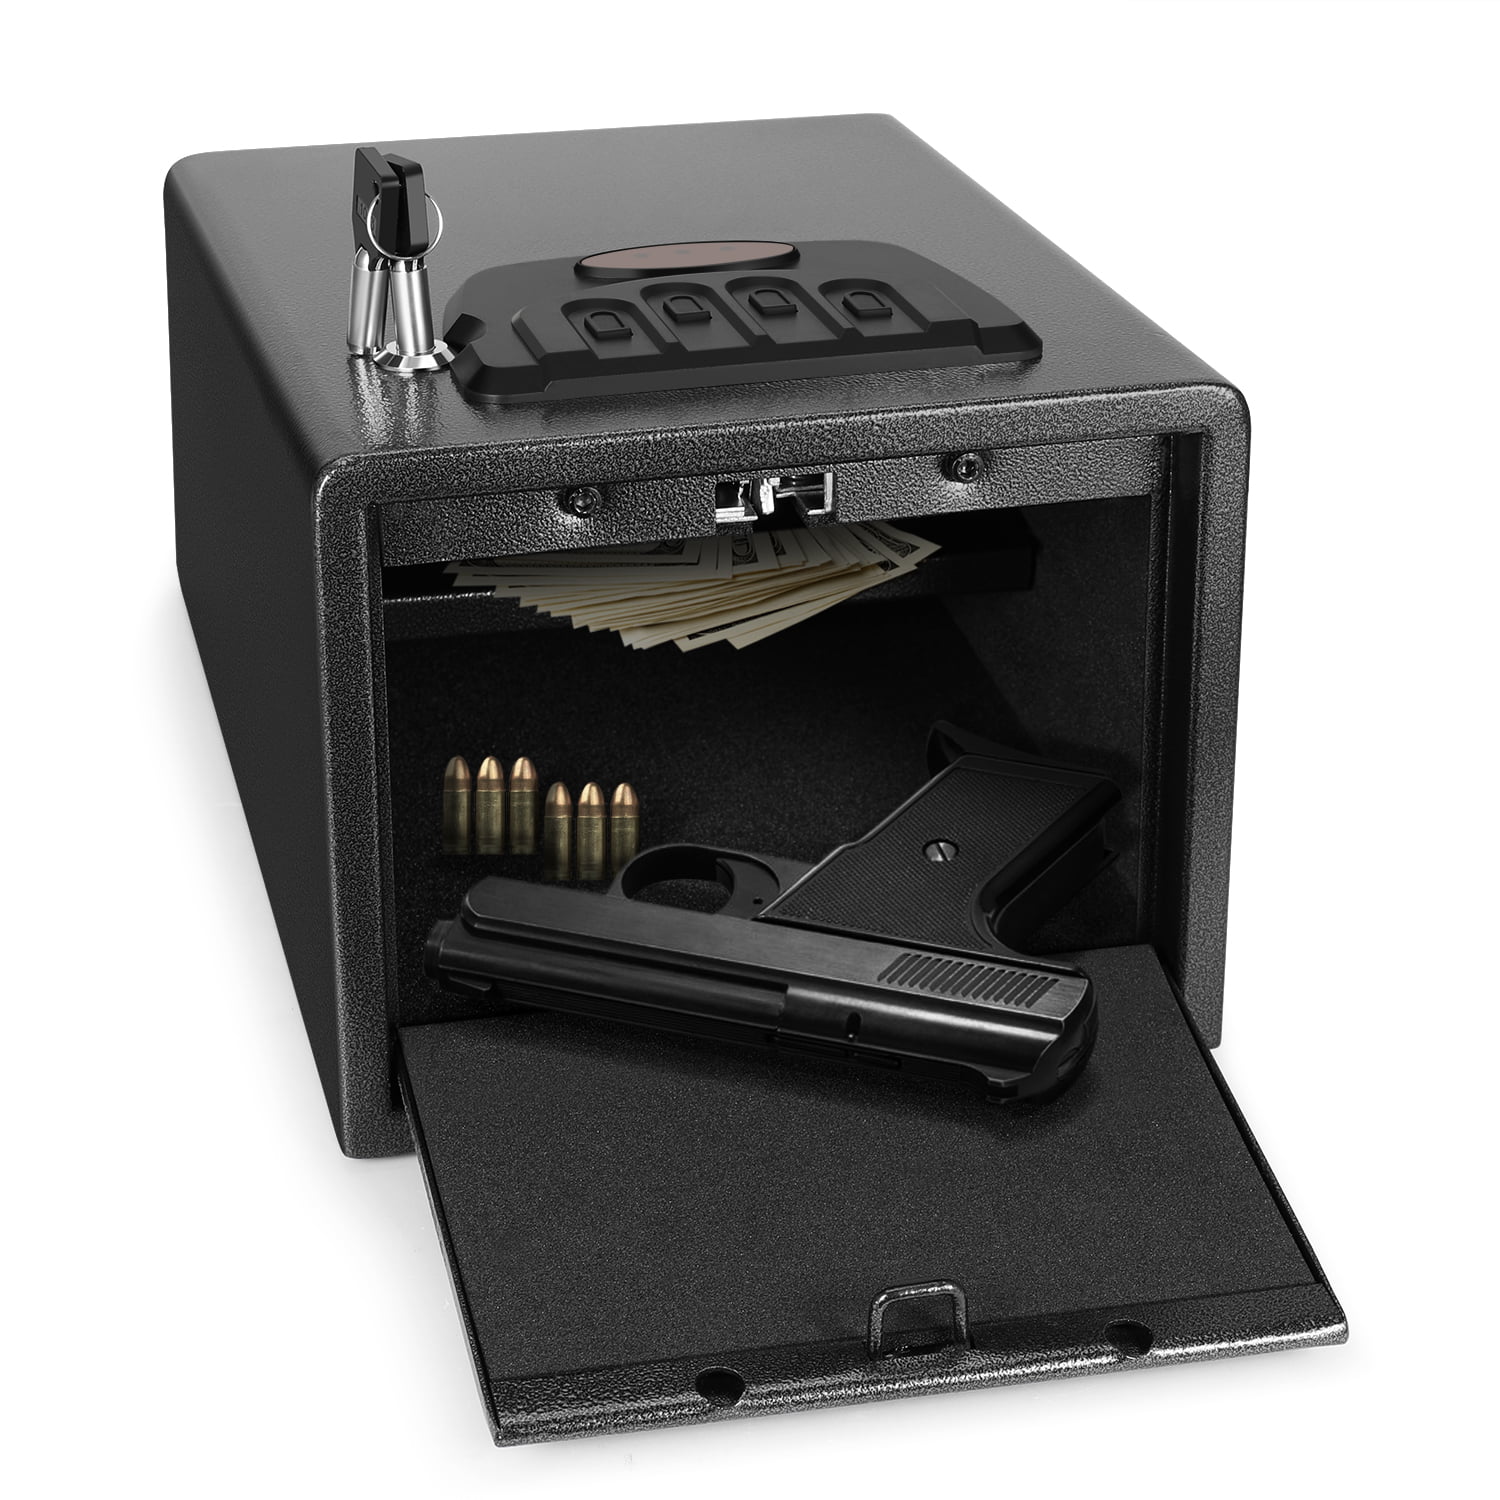 Quick Access Gun Pistol Safe Firearm Handgun Storage Security Cabinet Lock Box